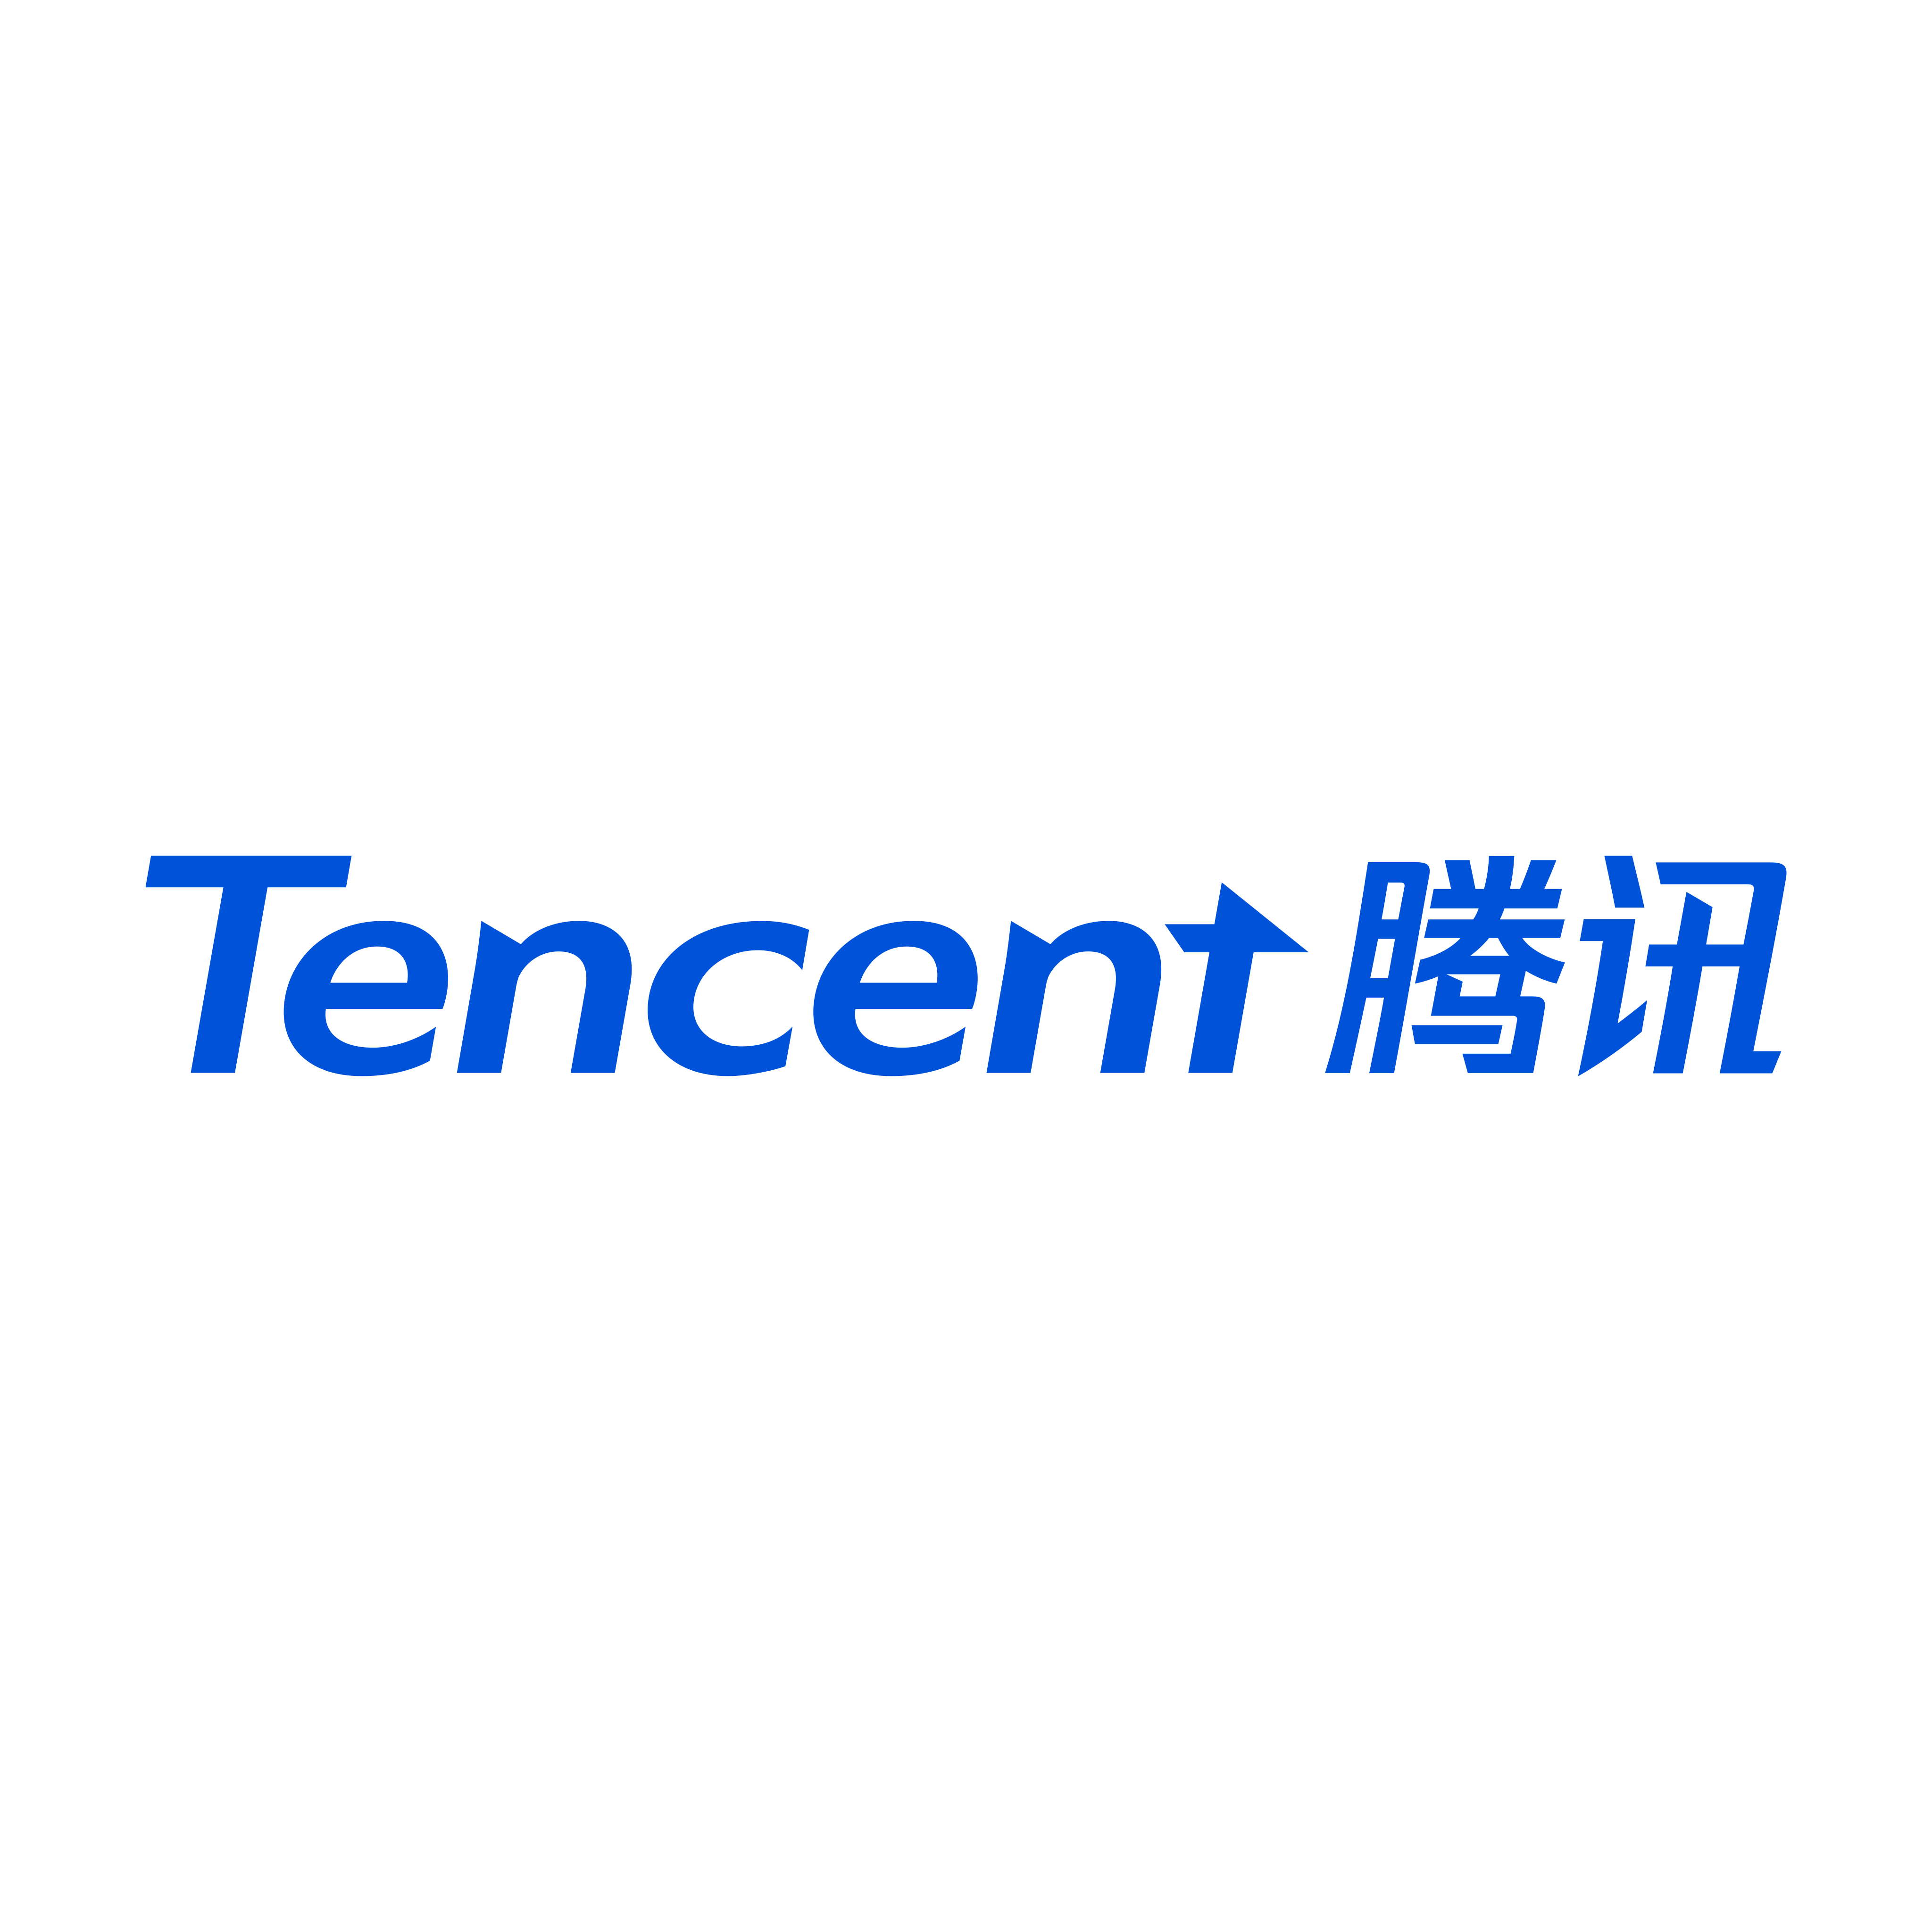 tencent logo 0 - Tencent Logo